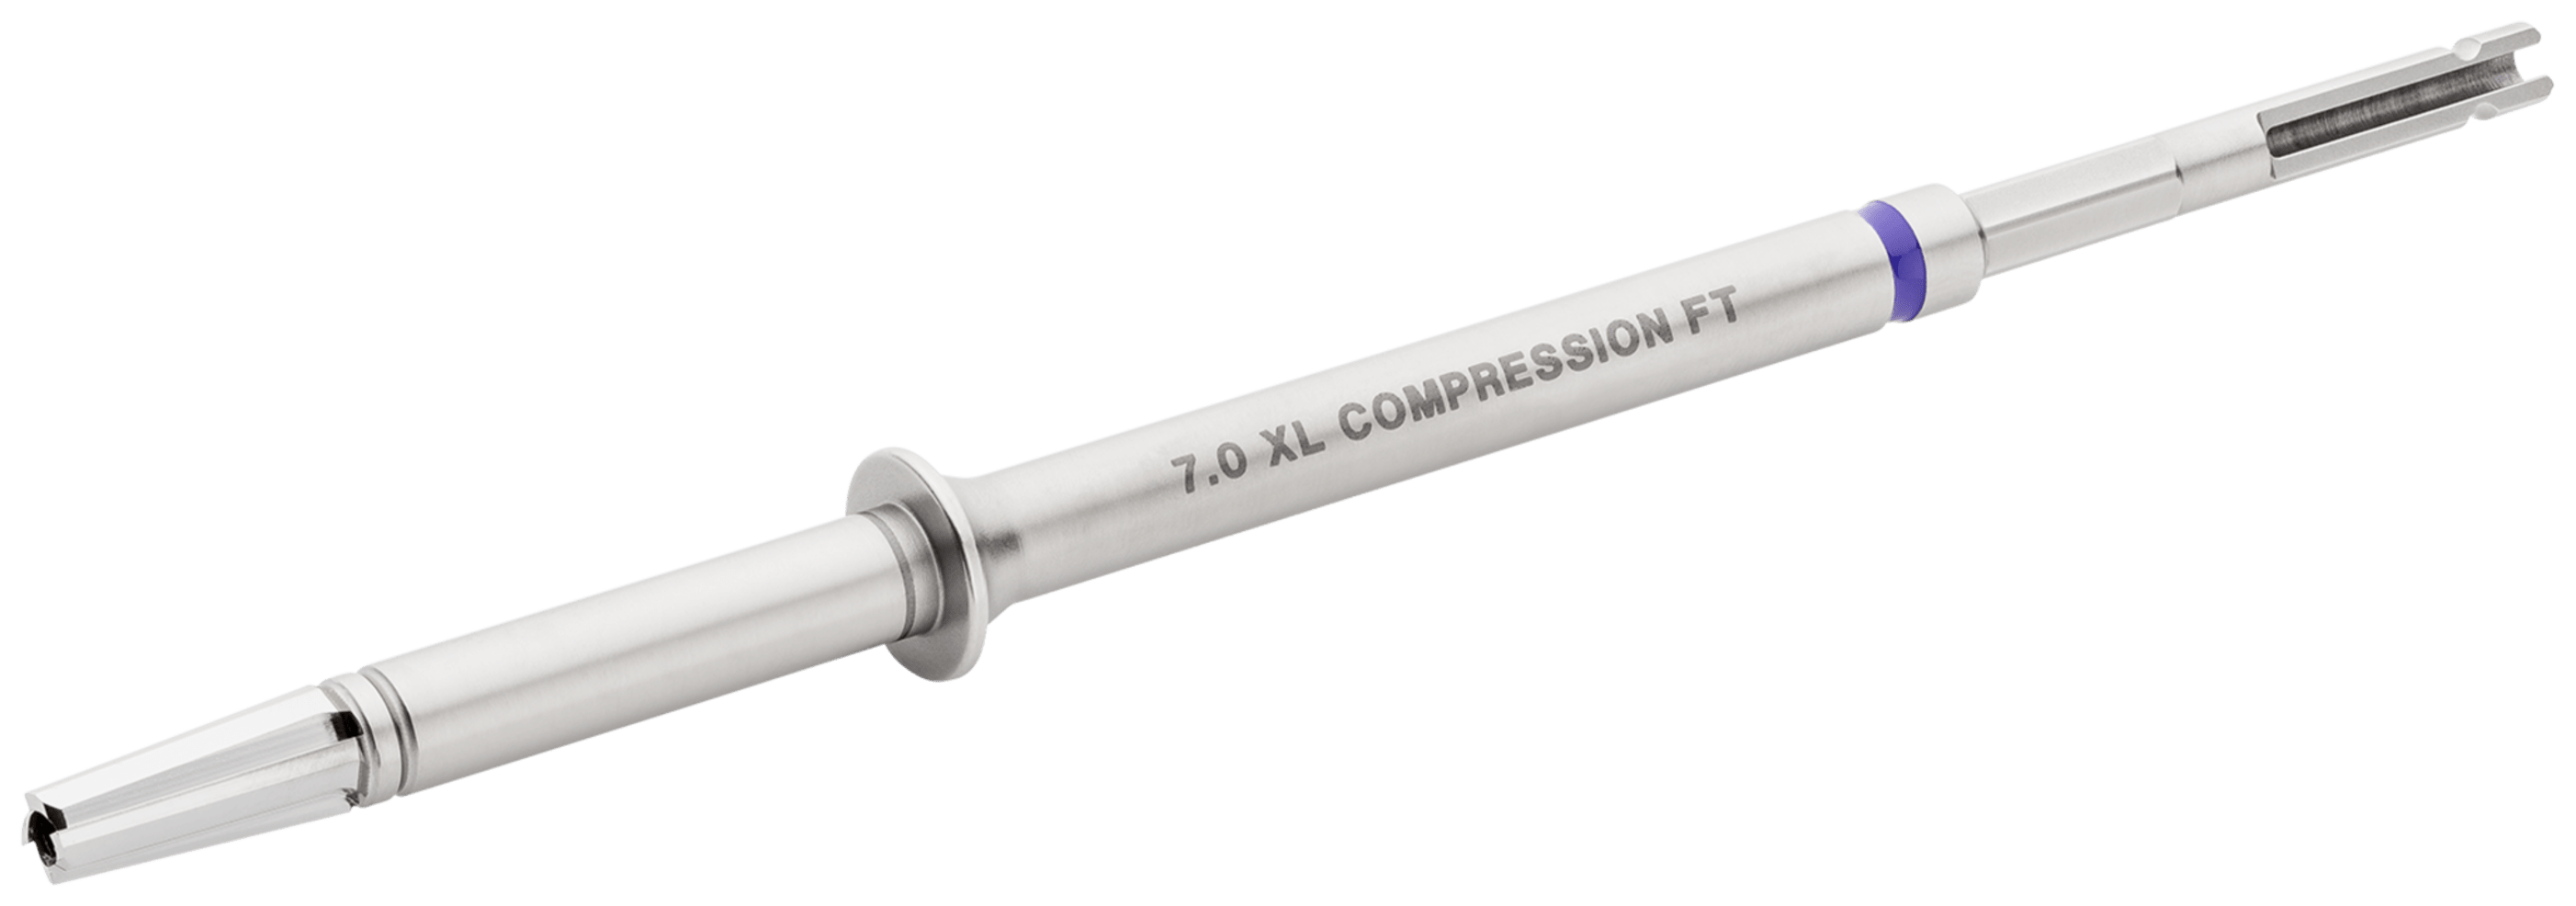 Profilbohrer, für Kompressionsschrauben FT, x-large, 7.0 mm